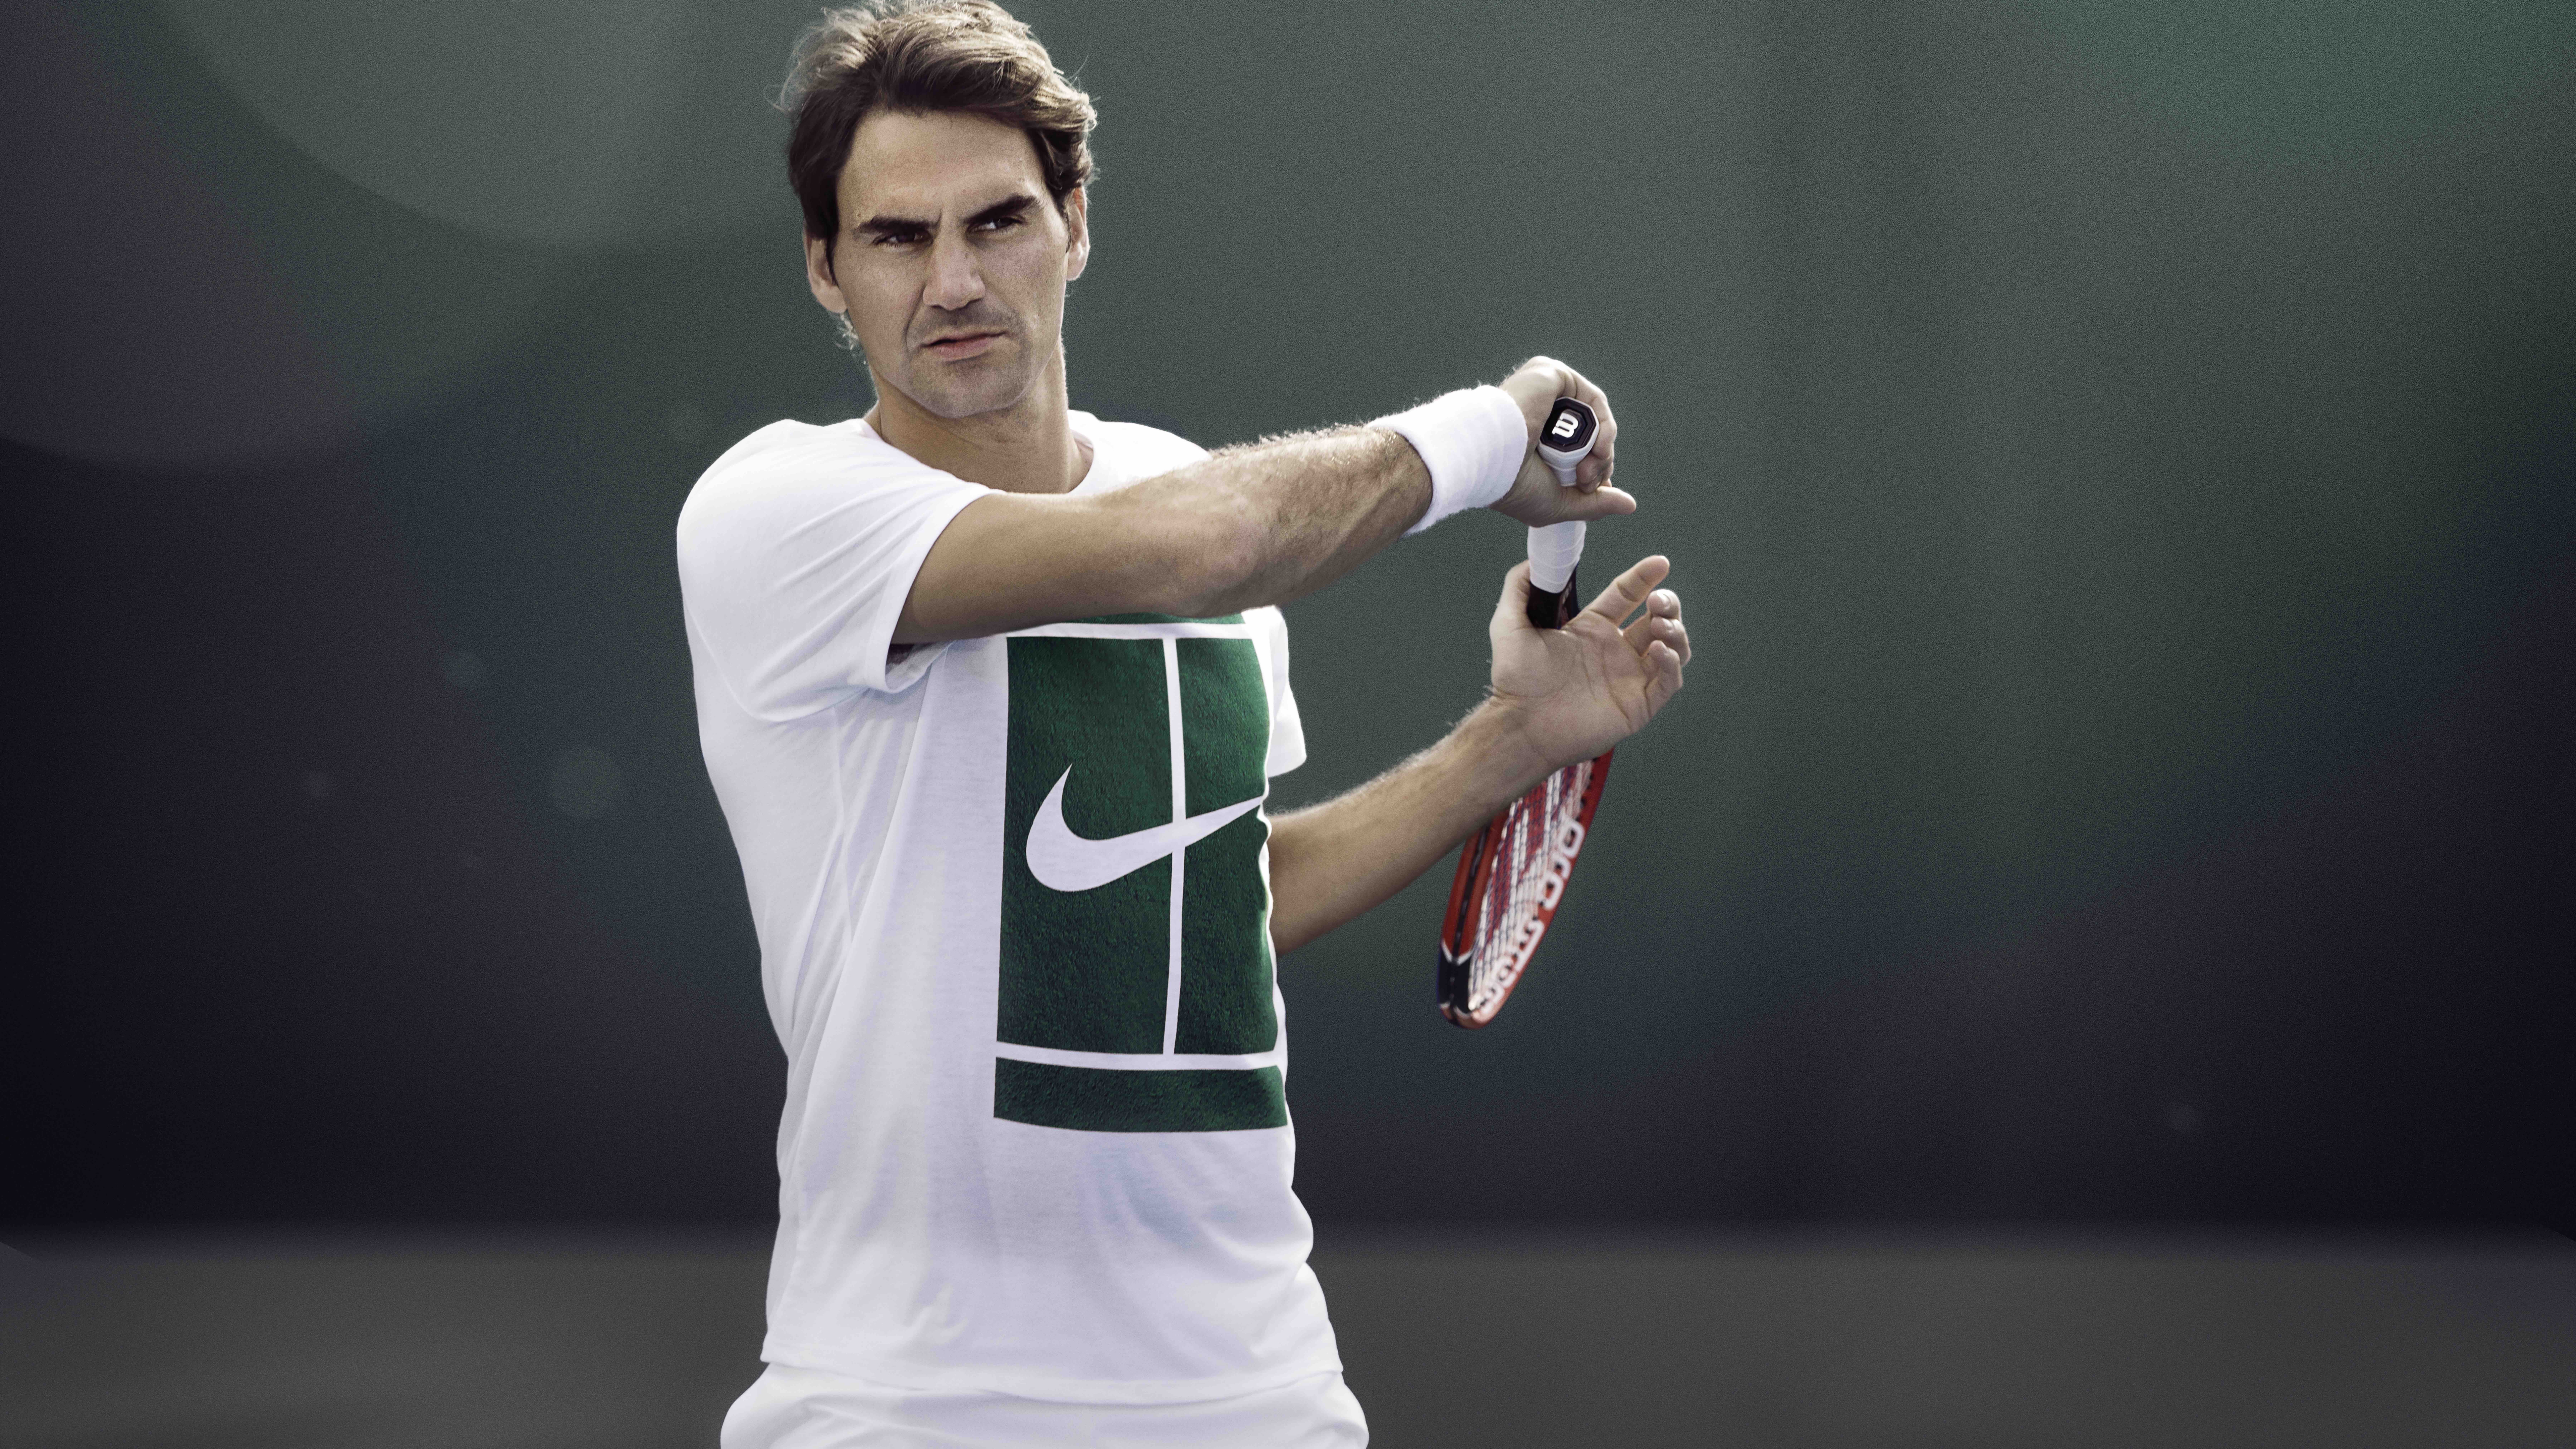 Homme en Chemise Jersey Nike Vert et Blanc Tenant Une Raquette de Tennis Rouge et Blanc. Wallpaper in 7680x4320 Resolution